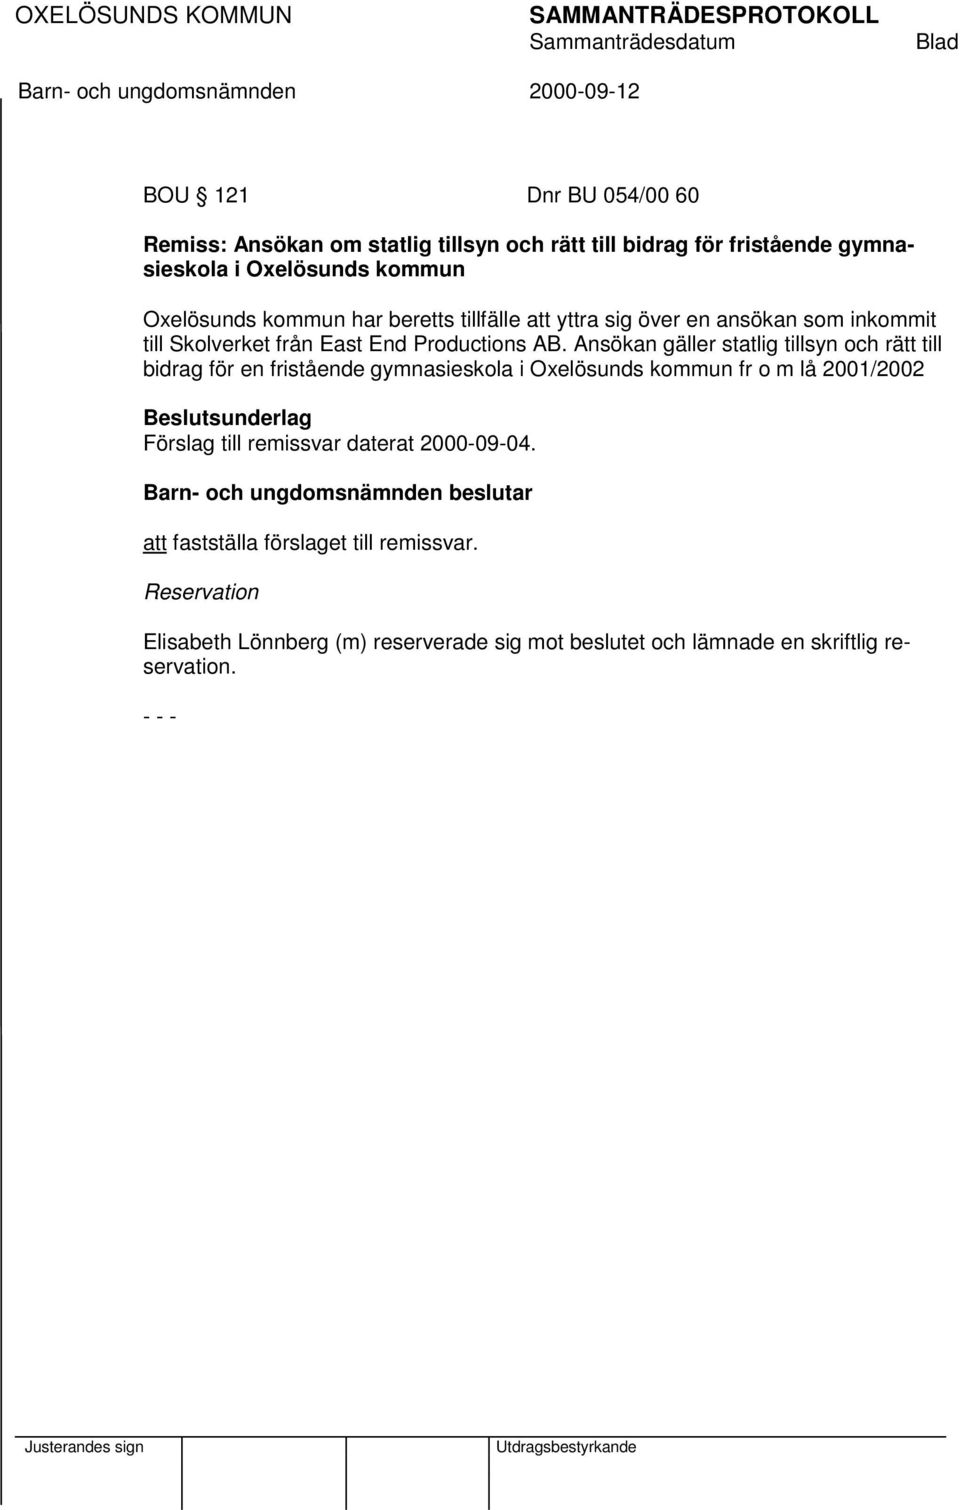 Ansökan gäller statlig tillsyn och rätt till bidrag för en fristående gymnasieskola i Oxelösunds kommun fr o m lå 2001/2002 Beslutsunderlag